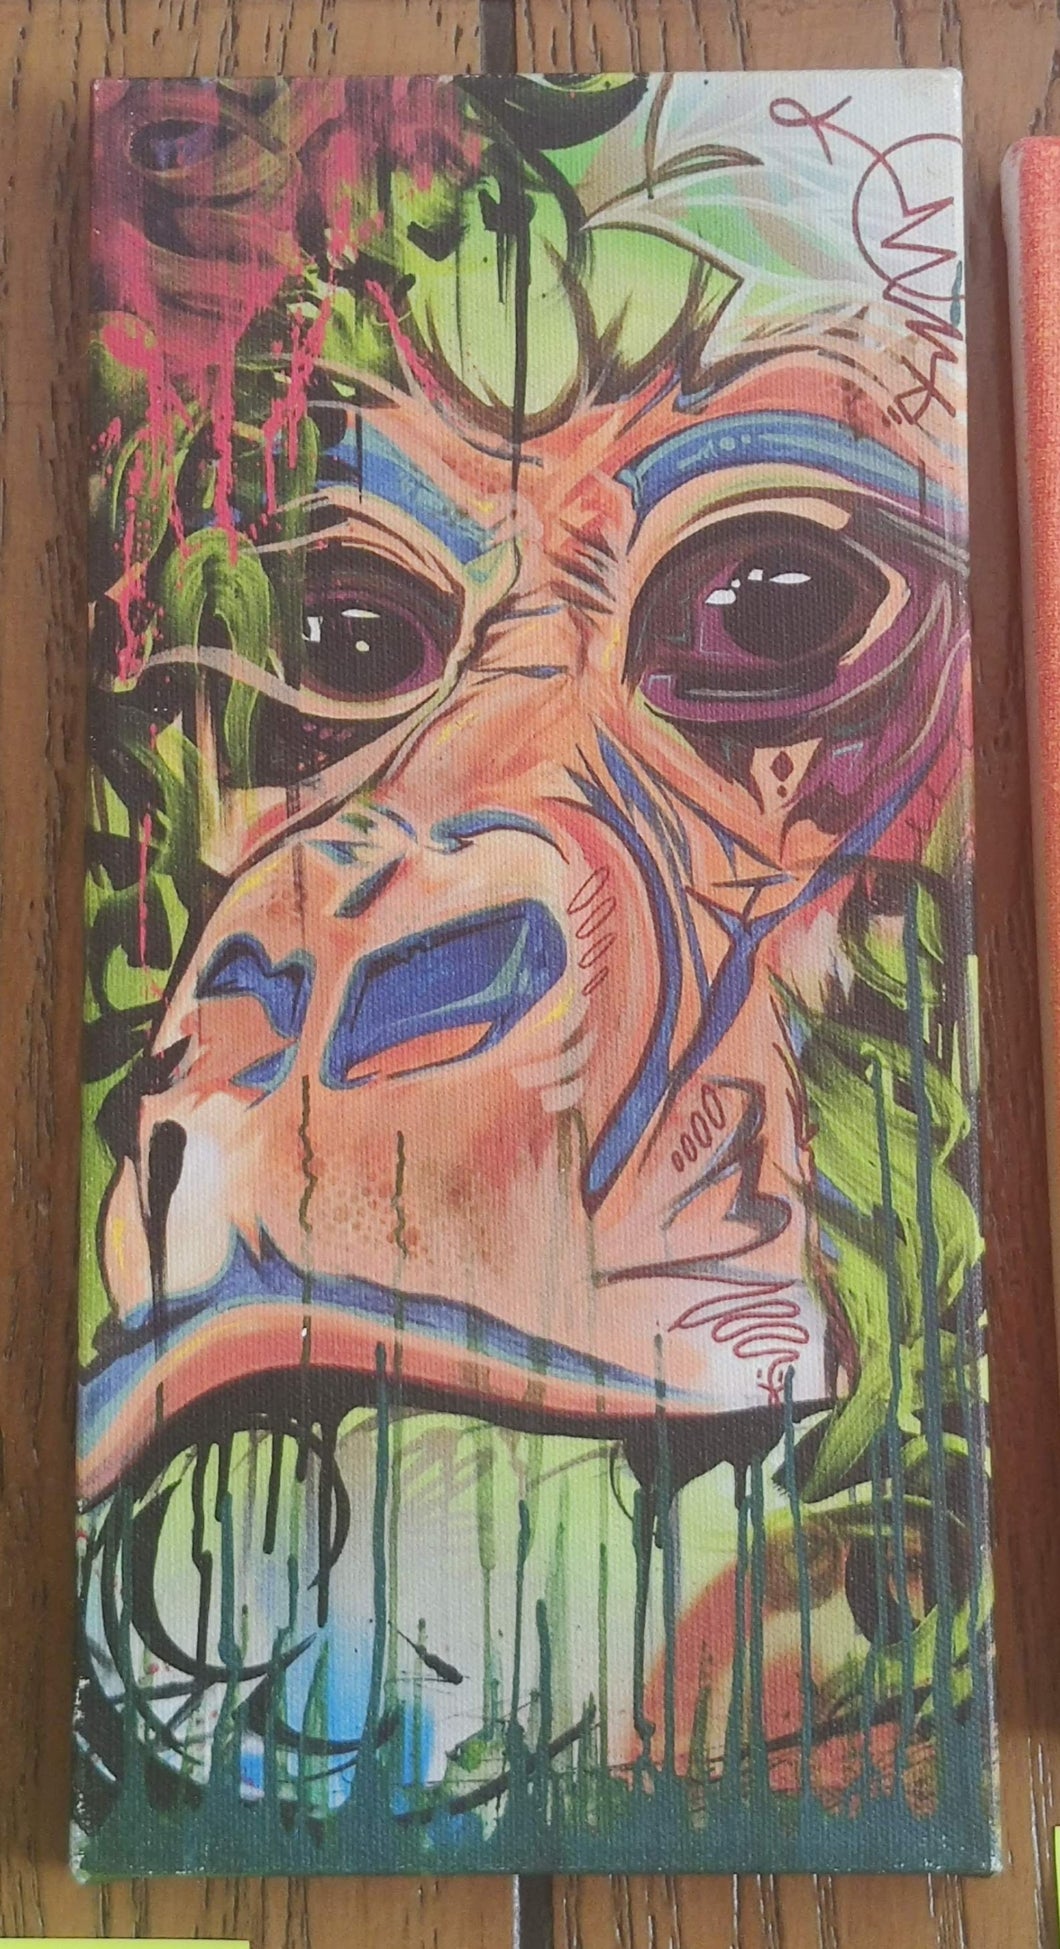 (Monkey Graffiti Panel) By Aigo